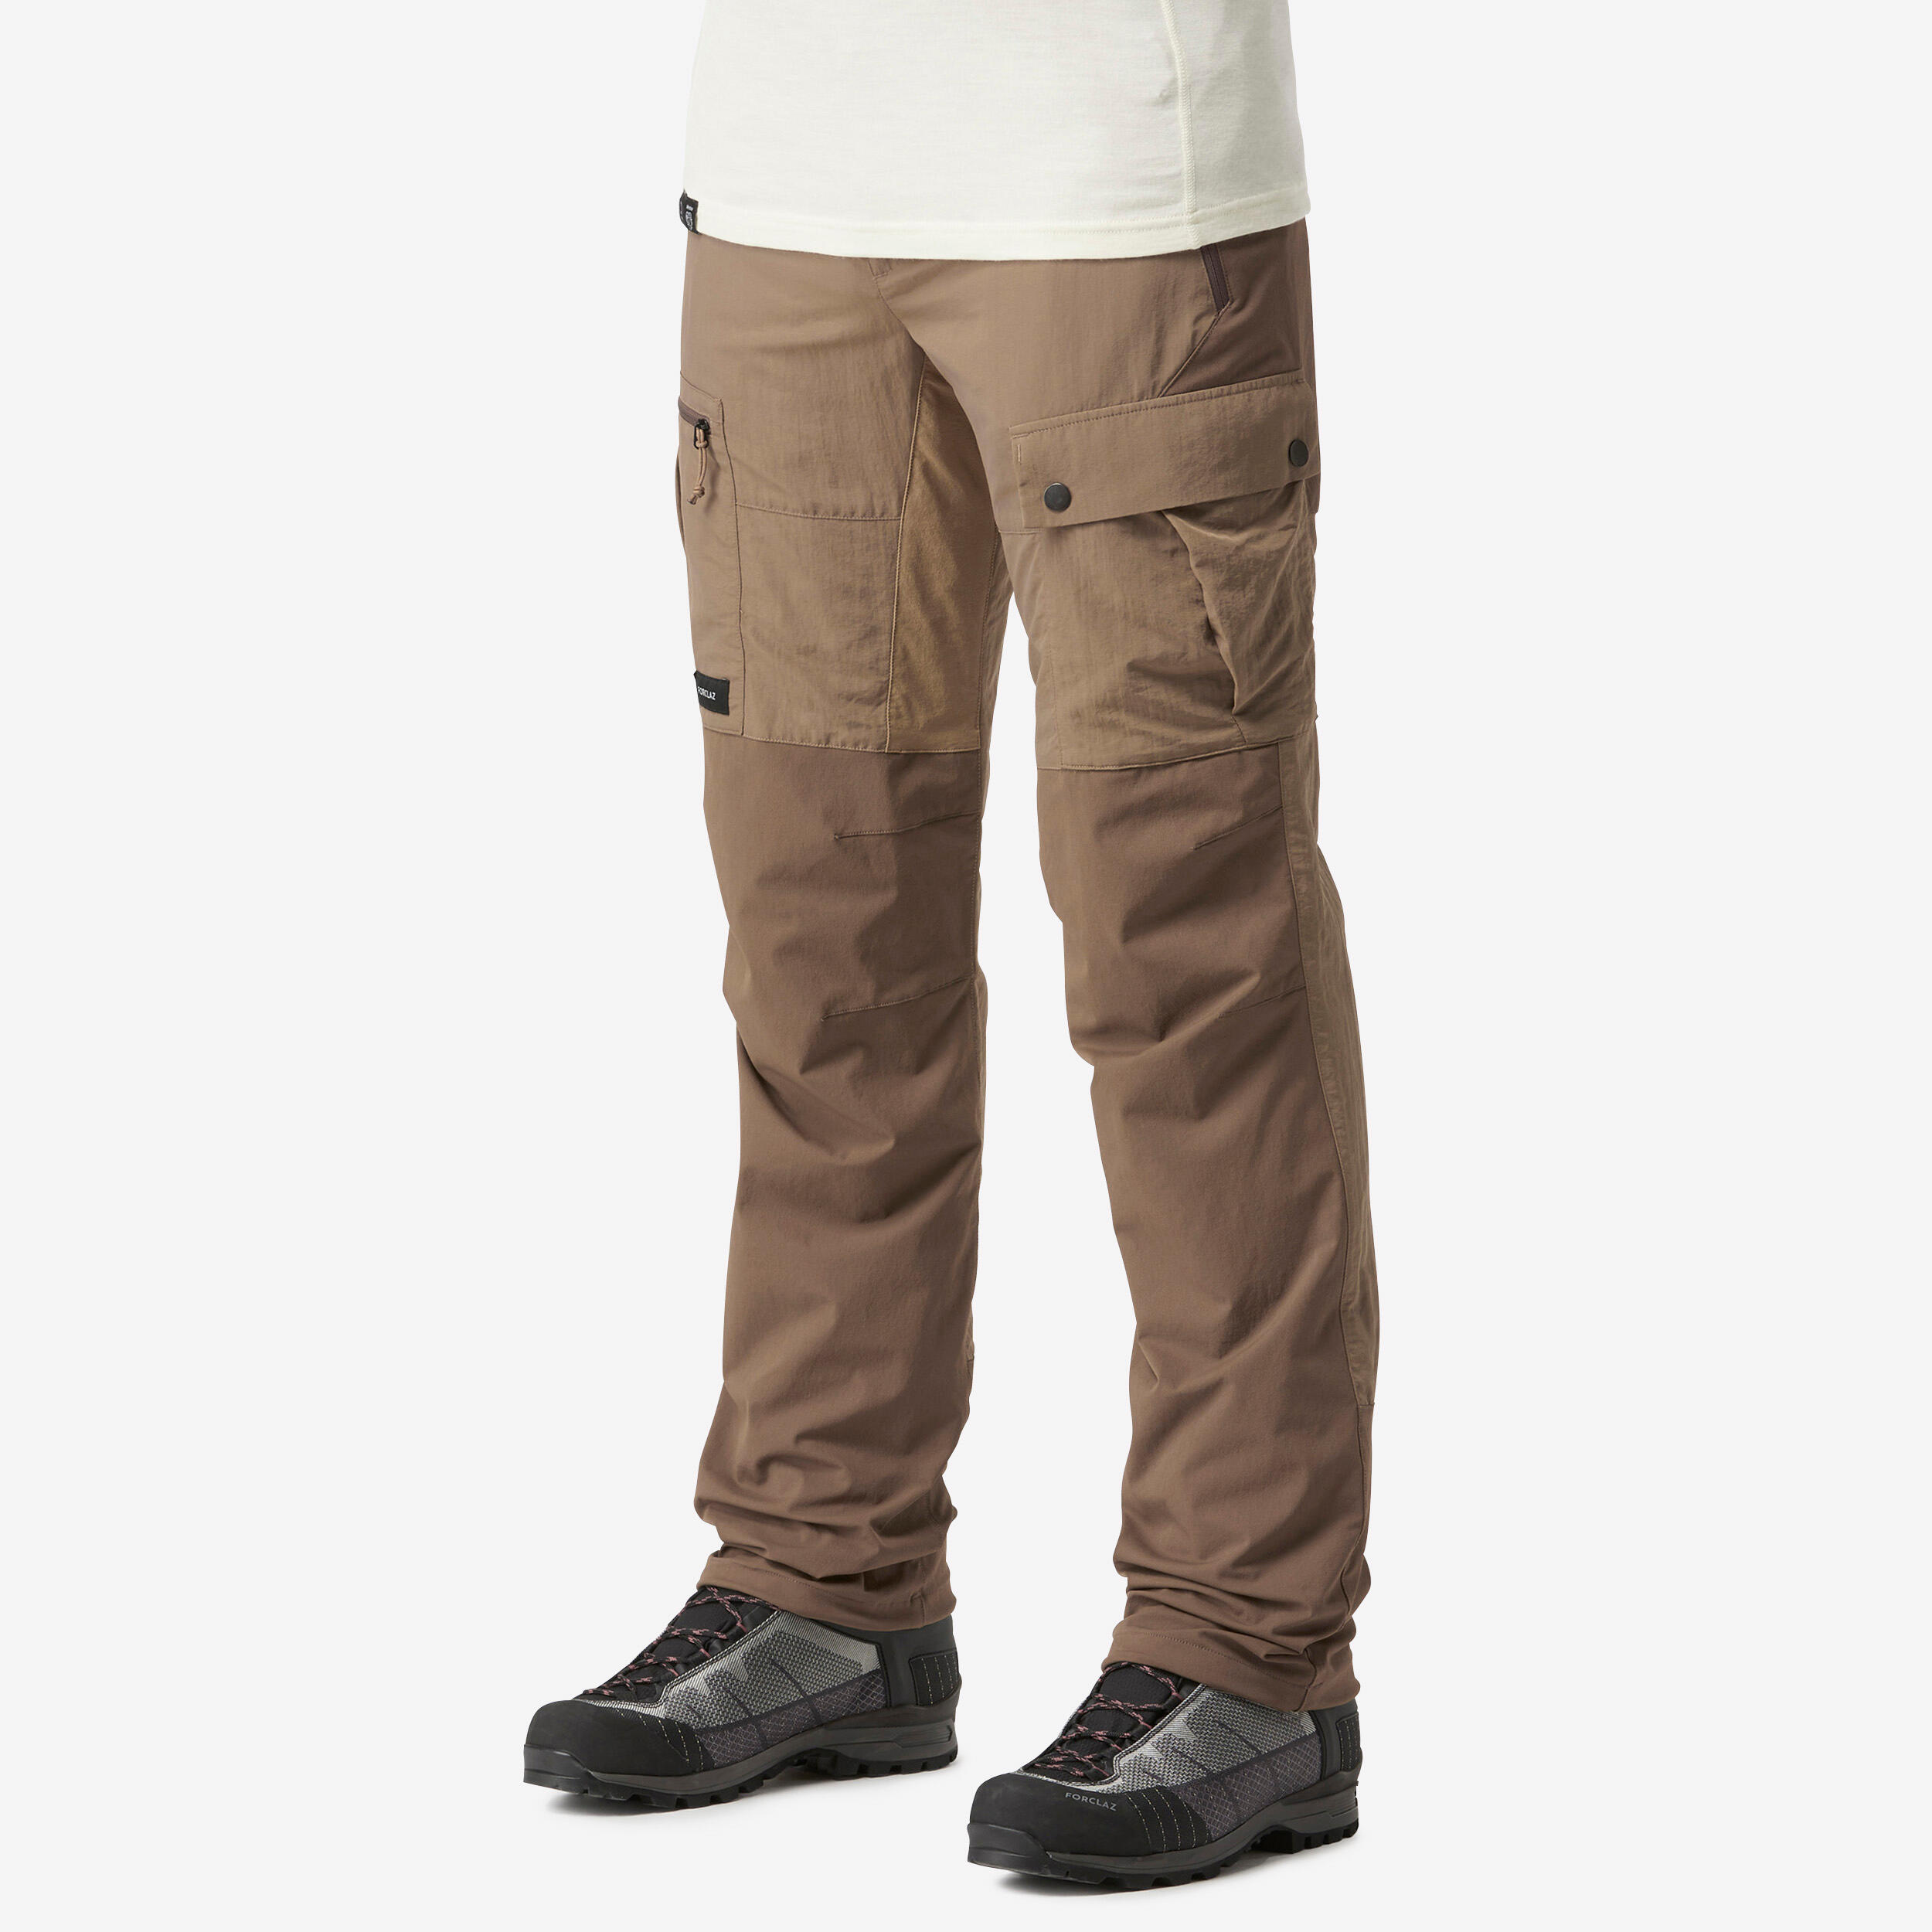 Buy Men's Desert Trekking Trousers Desert 500 Brown Online | Decathlon